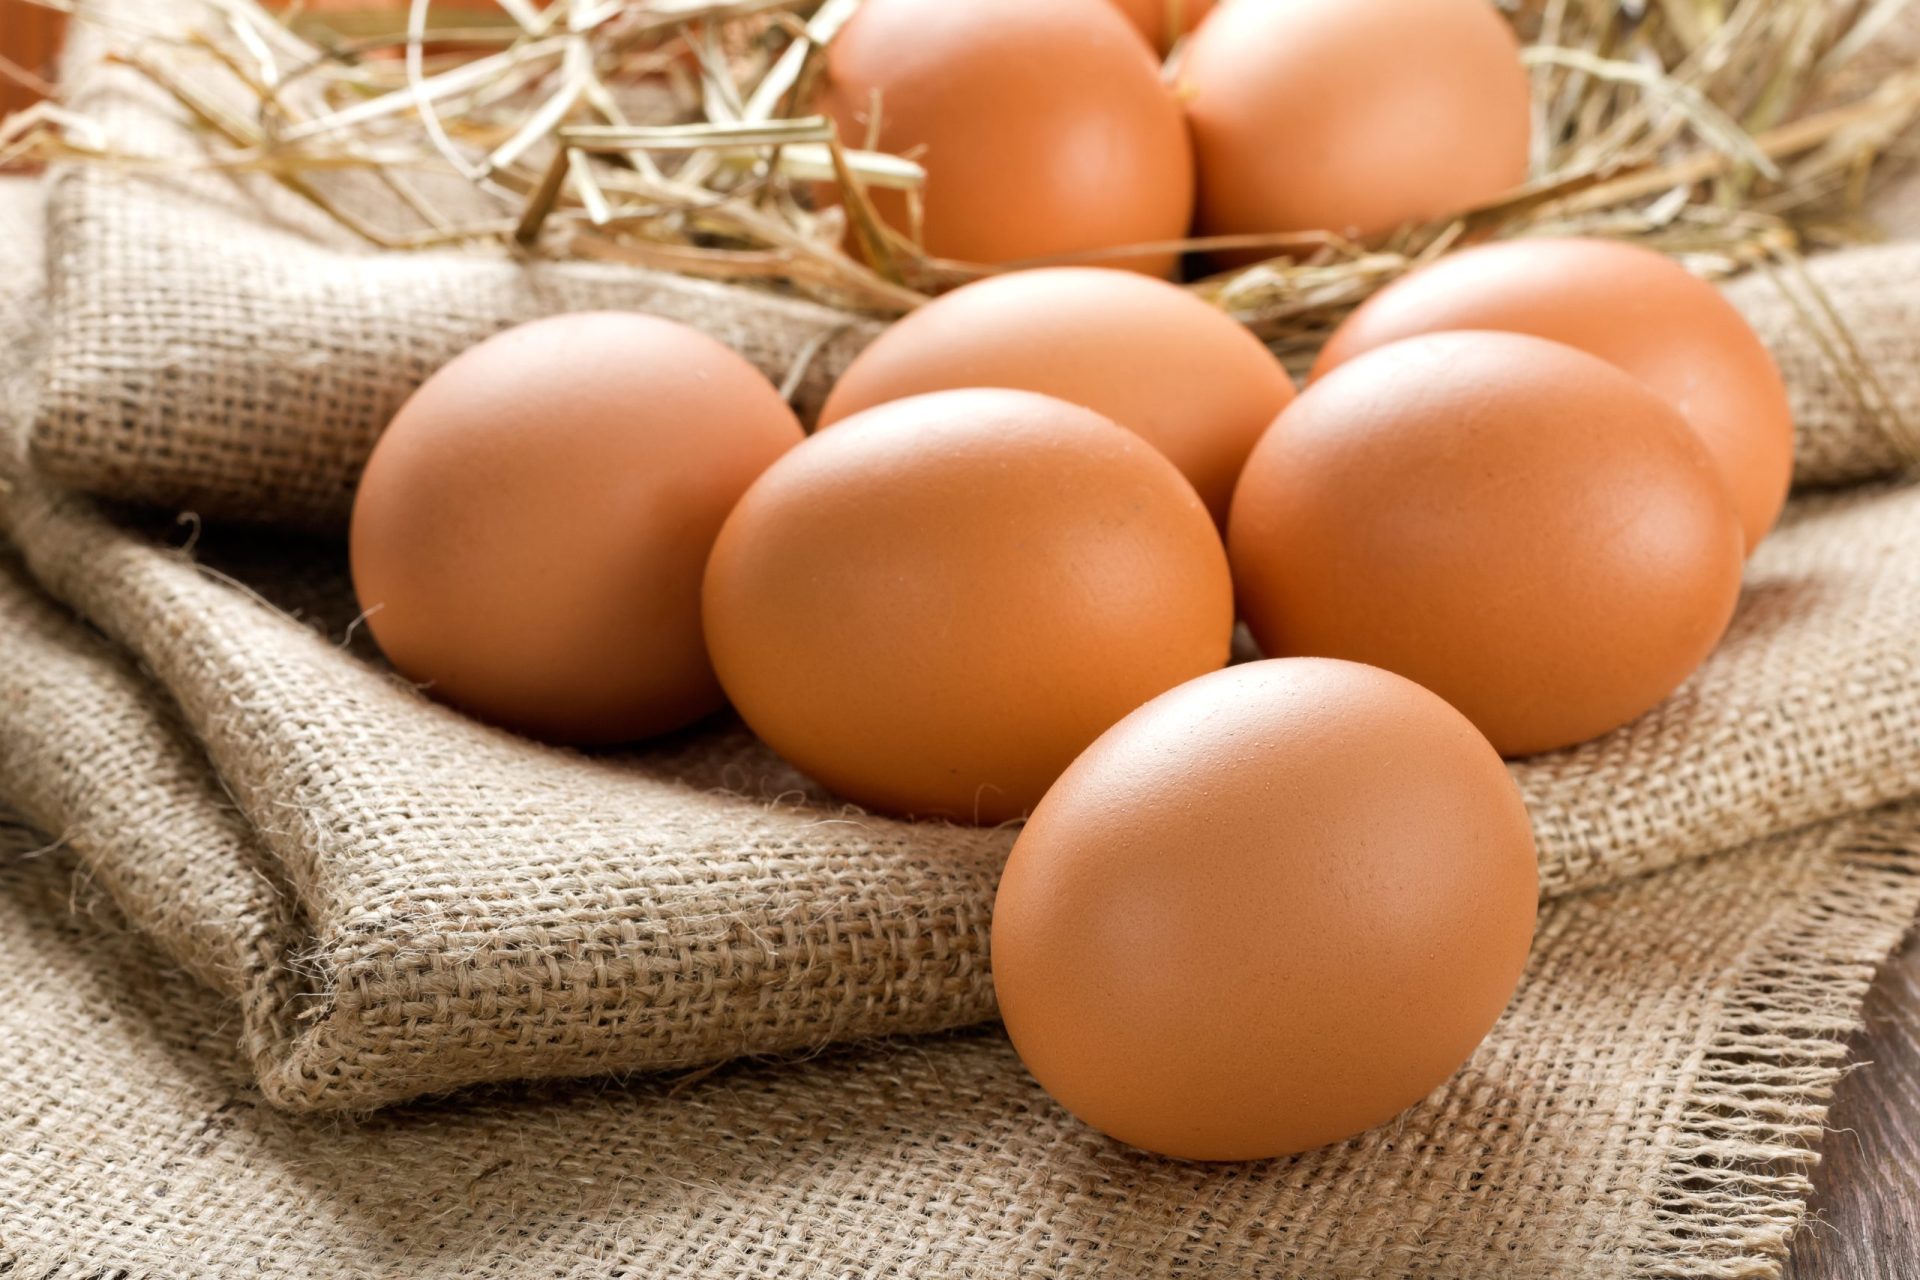 Ciência. Afinal, quem nasceu primeiro: o ovo ou a galinha?